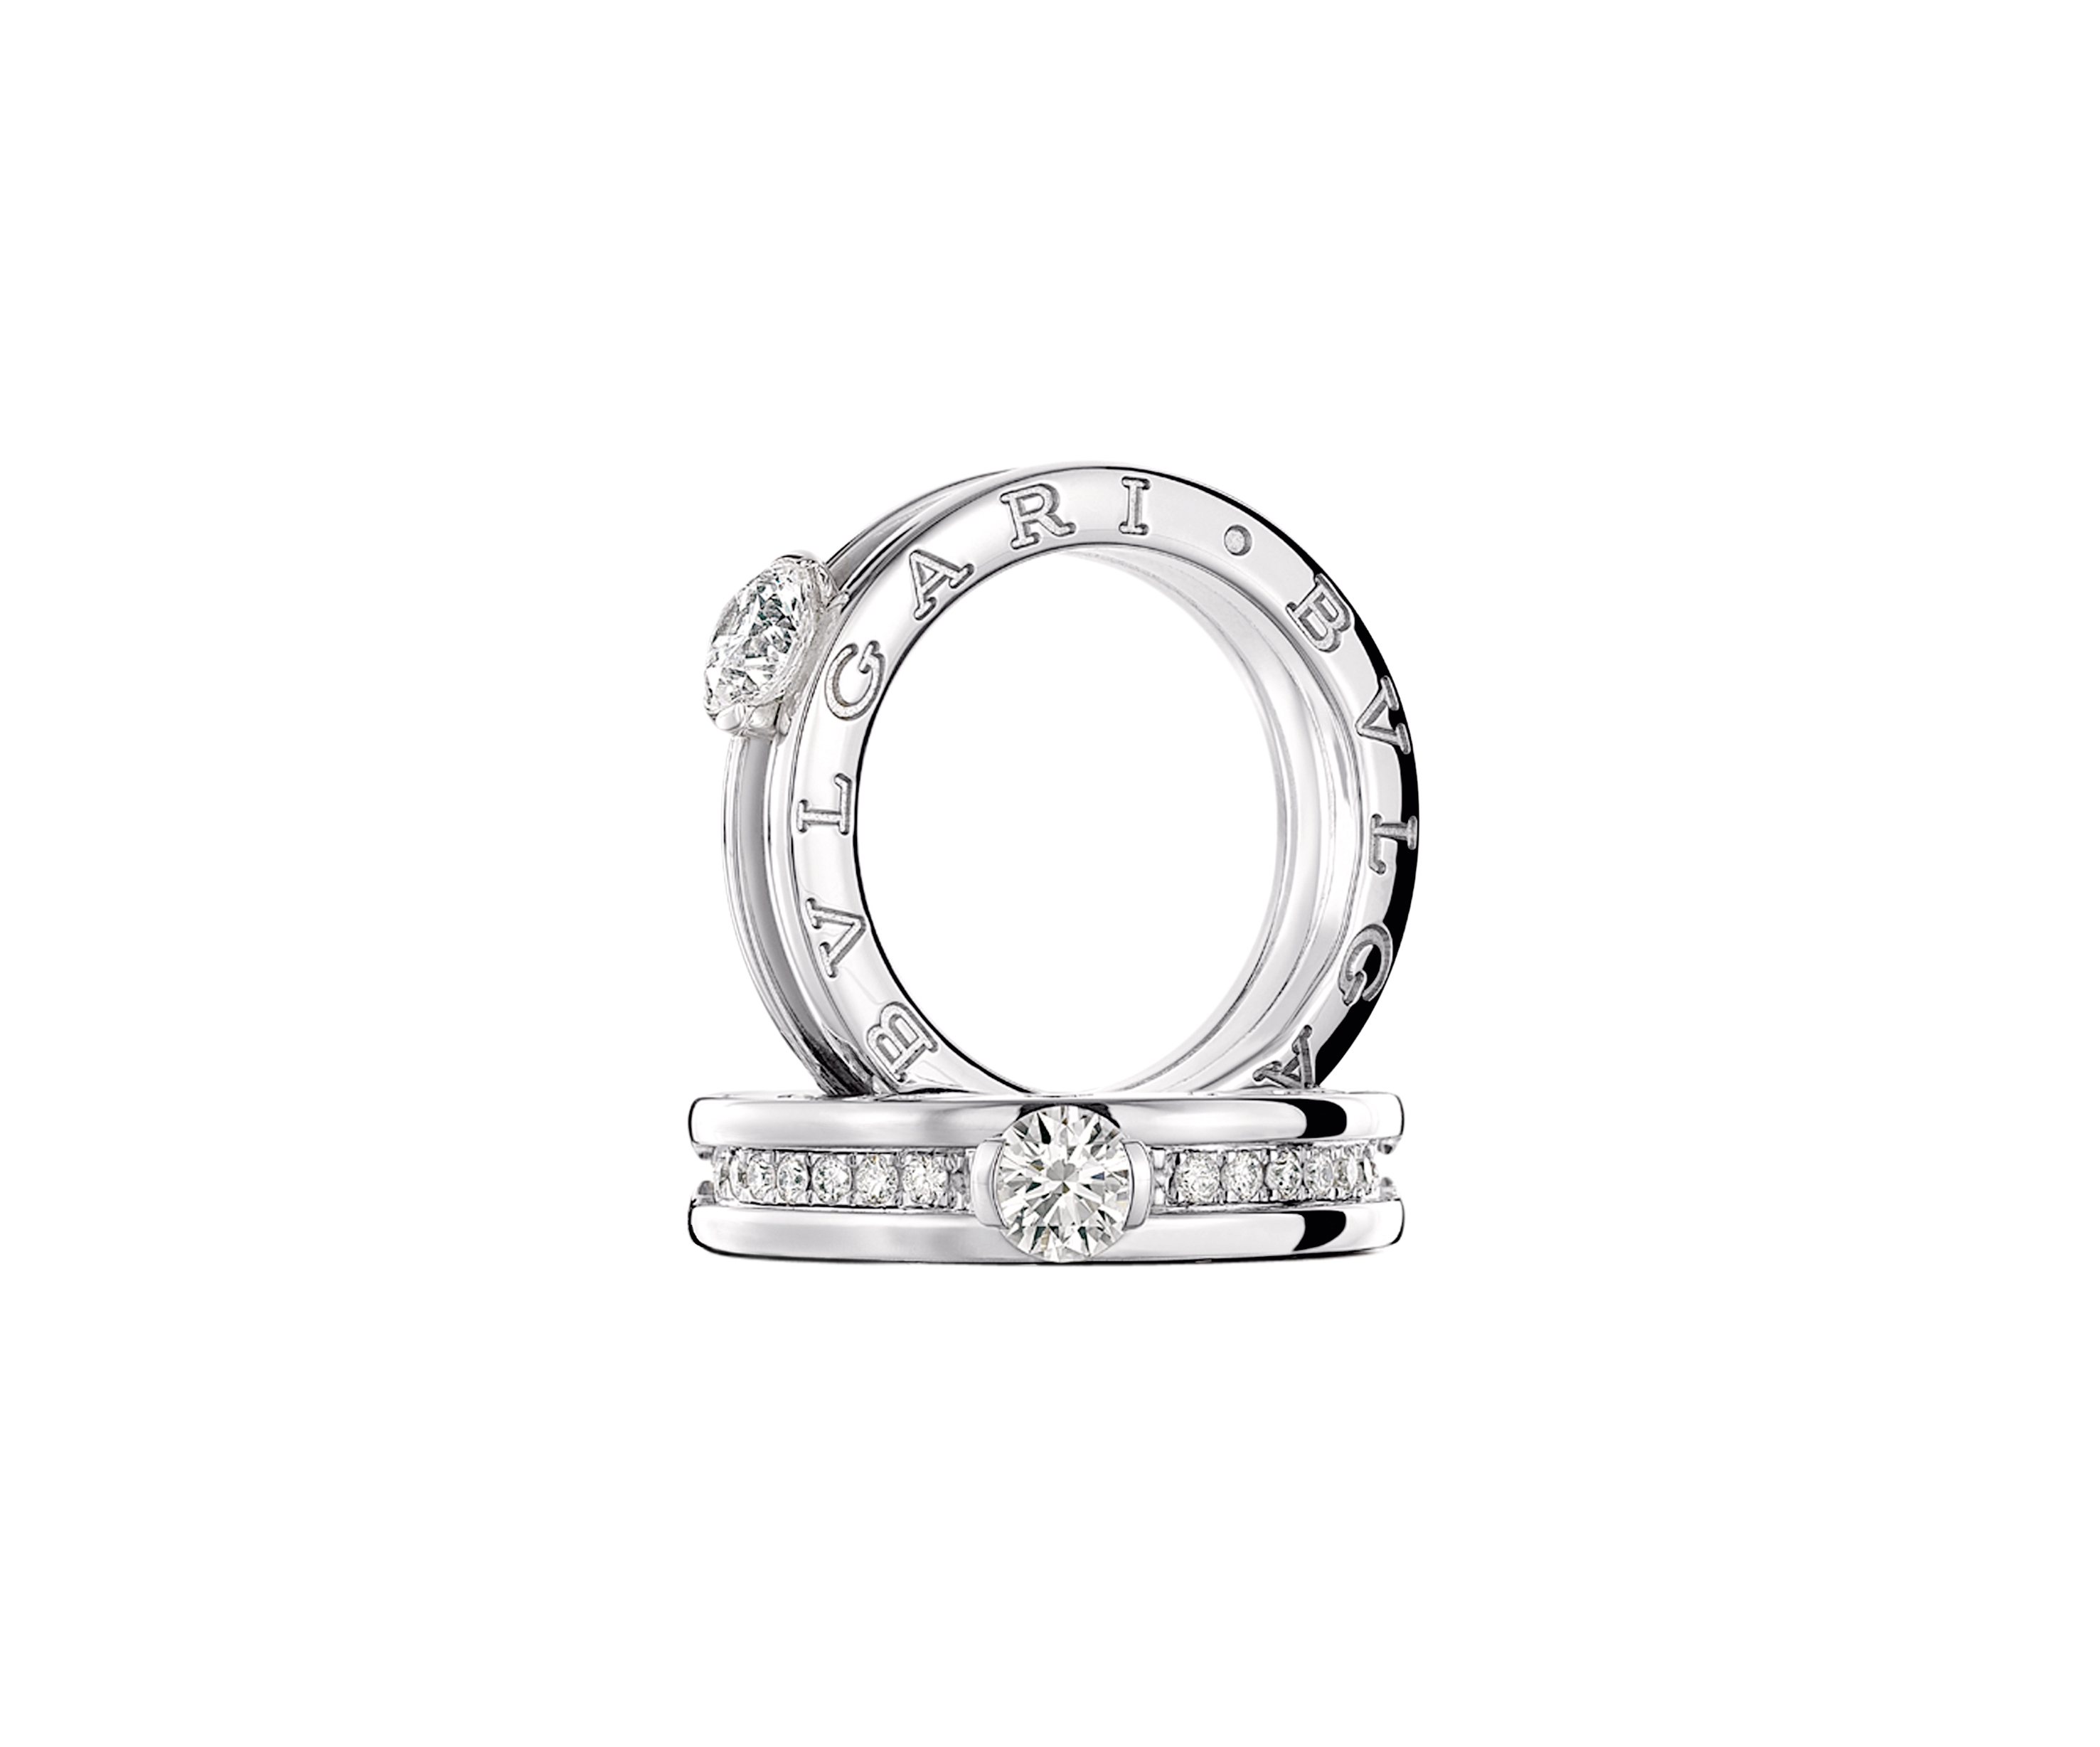 鑽戒 經典B.Zero 1白金戒指設計中性線條突出，中間主石由0.3卡起。$52,000起